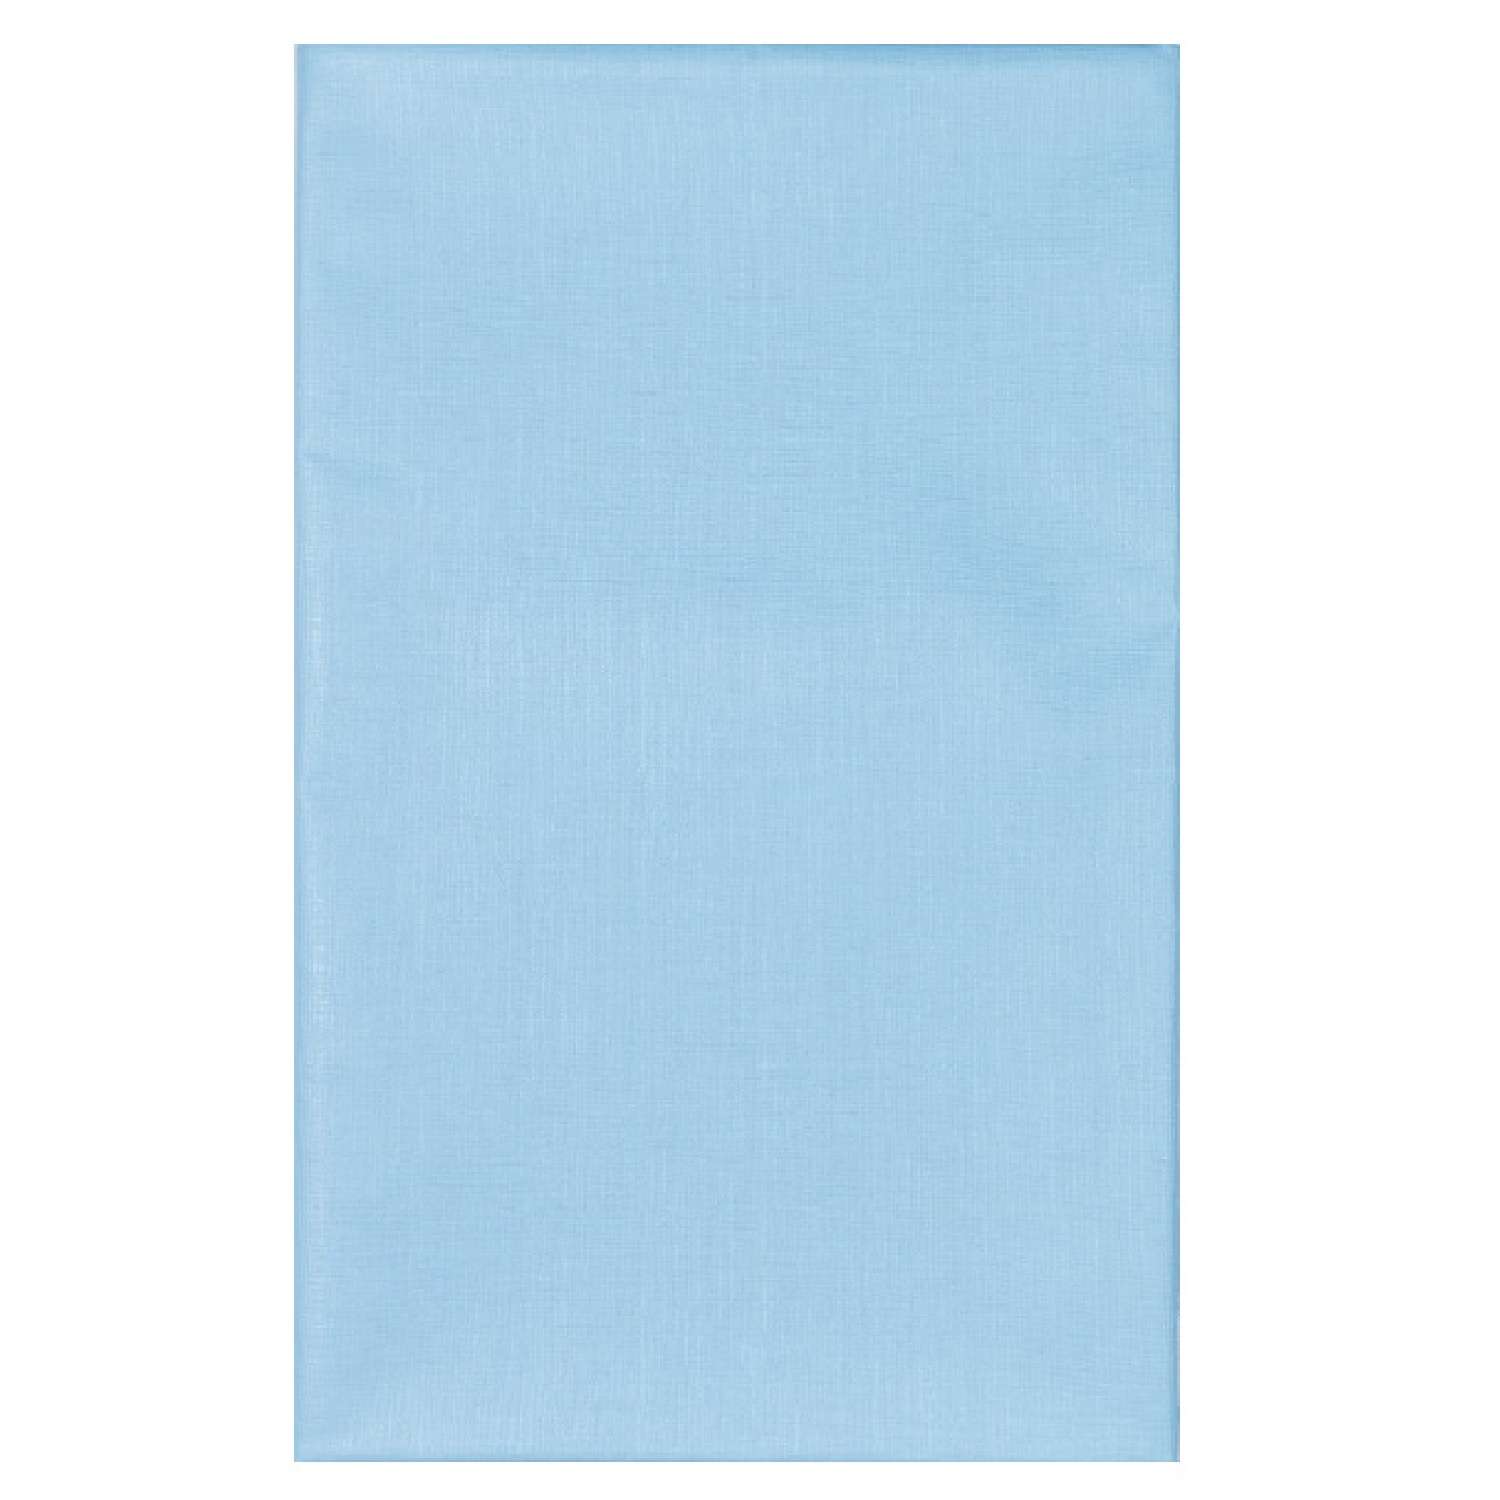 Клеенка Колорит на нетканой основе без окантовки голубая 0.5x0.7 м - фото 1